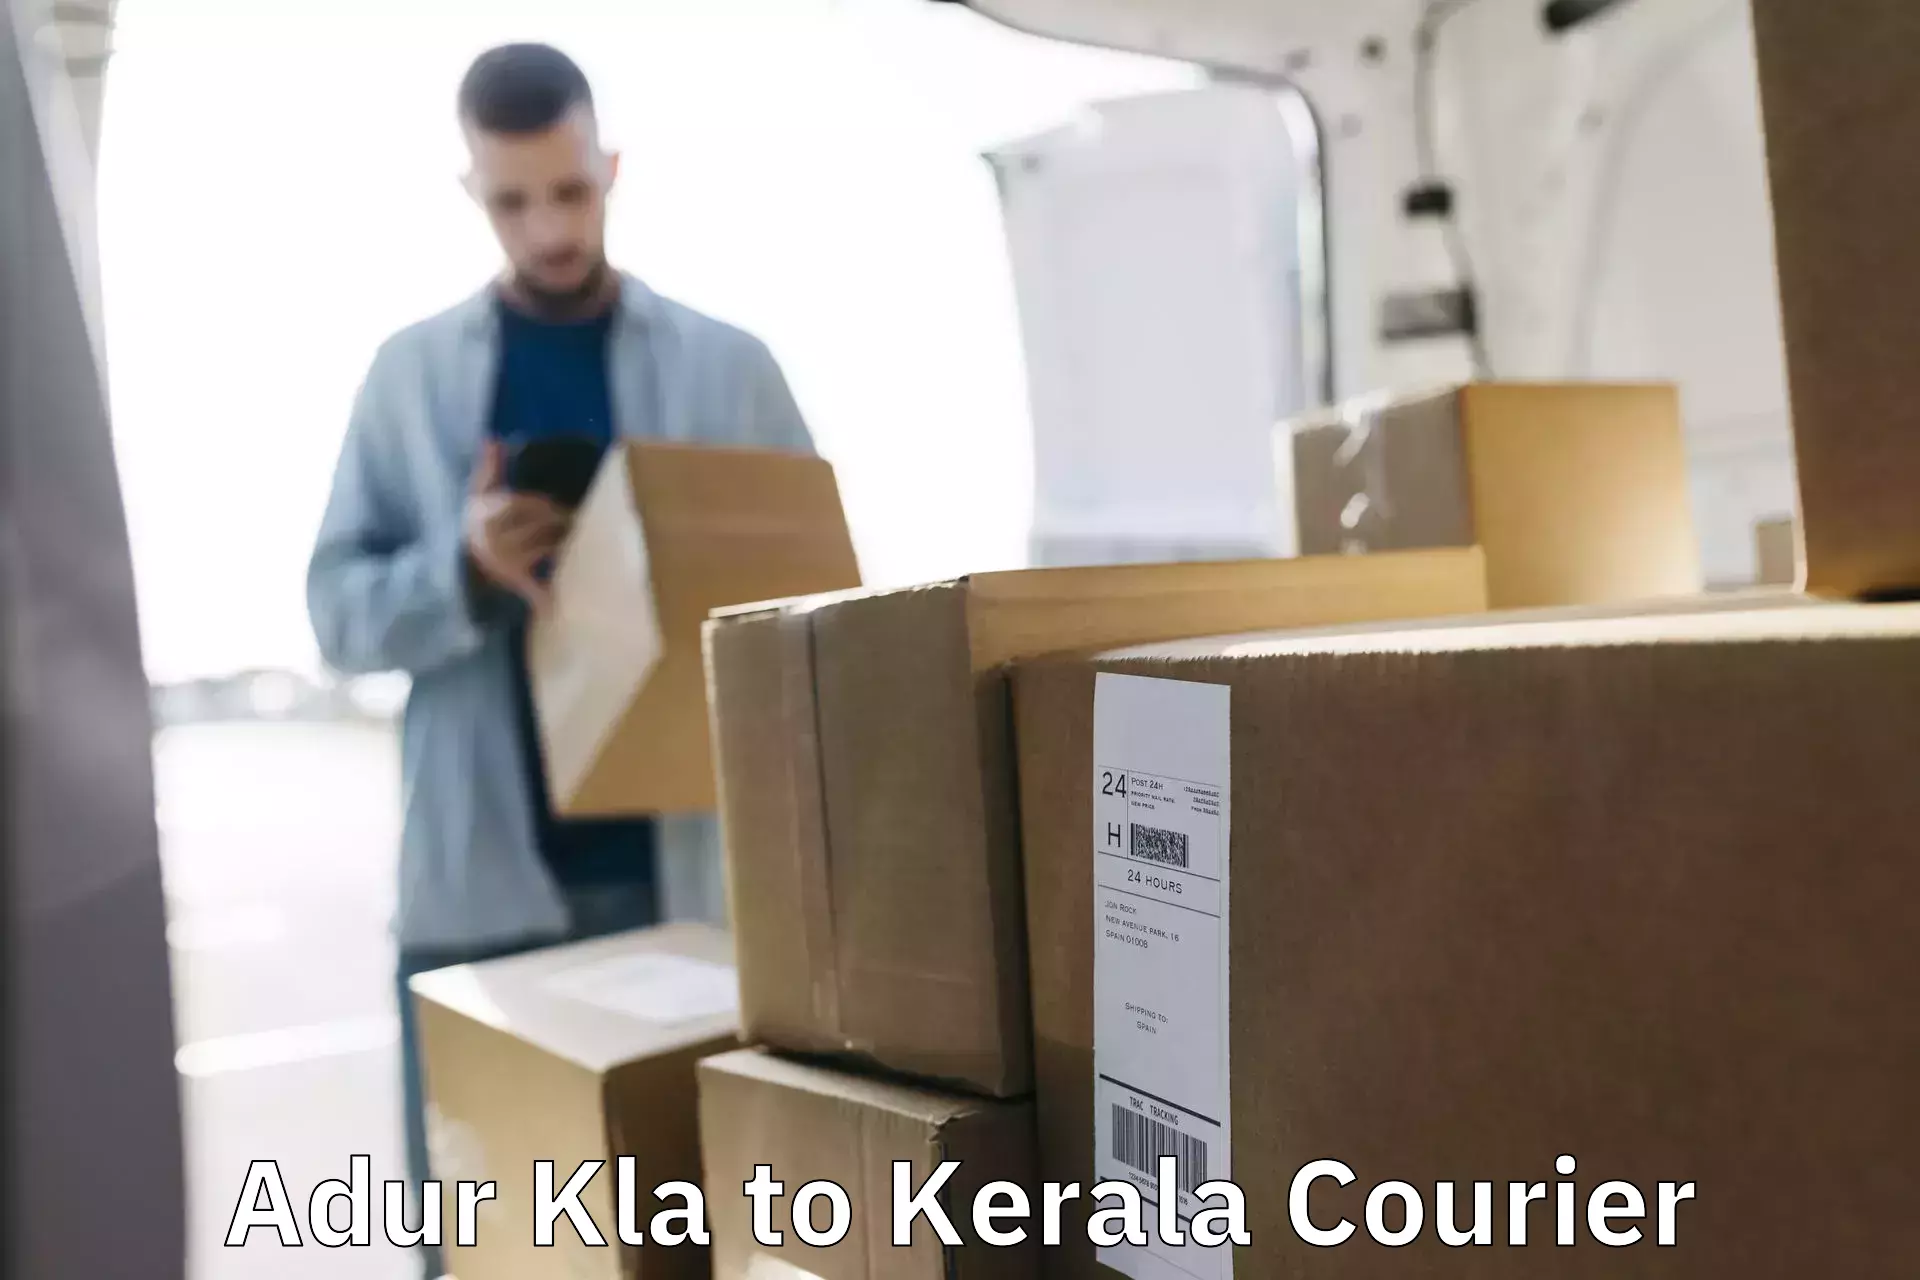 Courier service comparison Adur Kla to Haripad